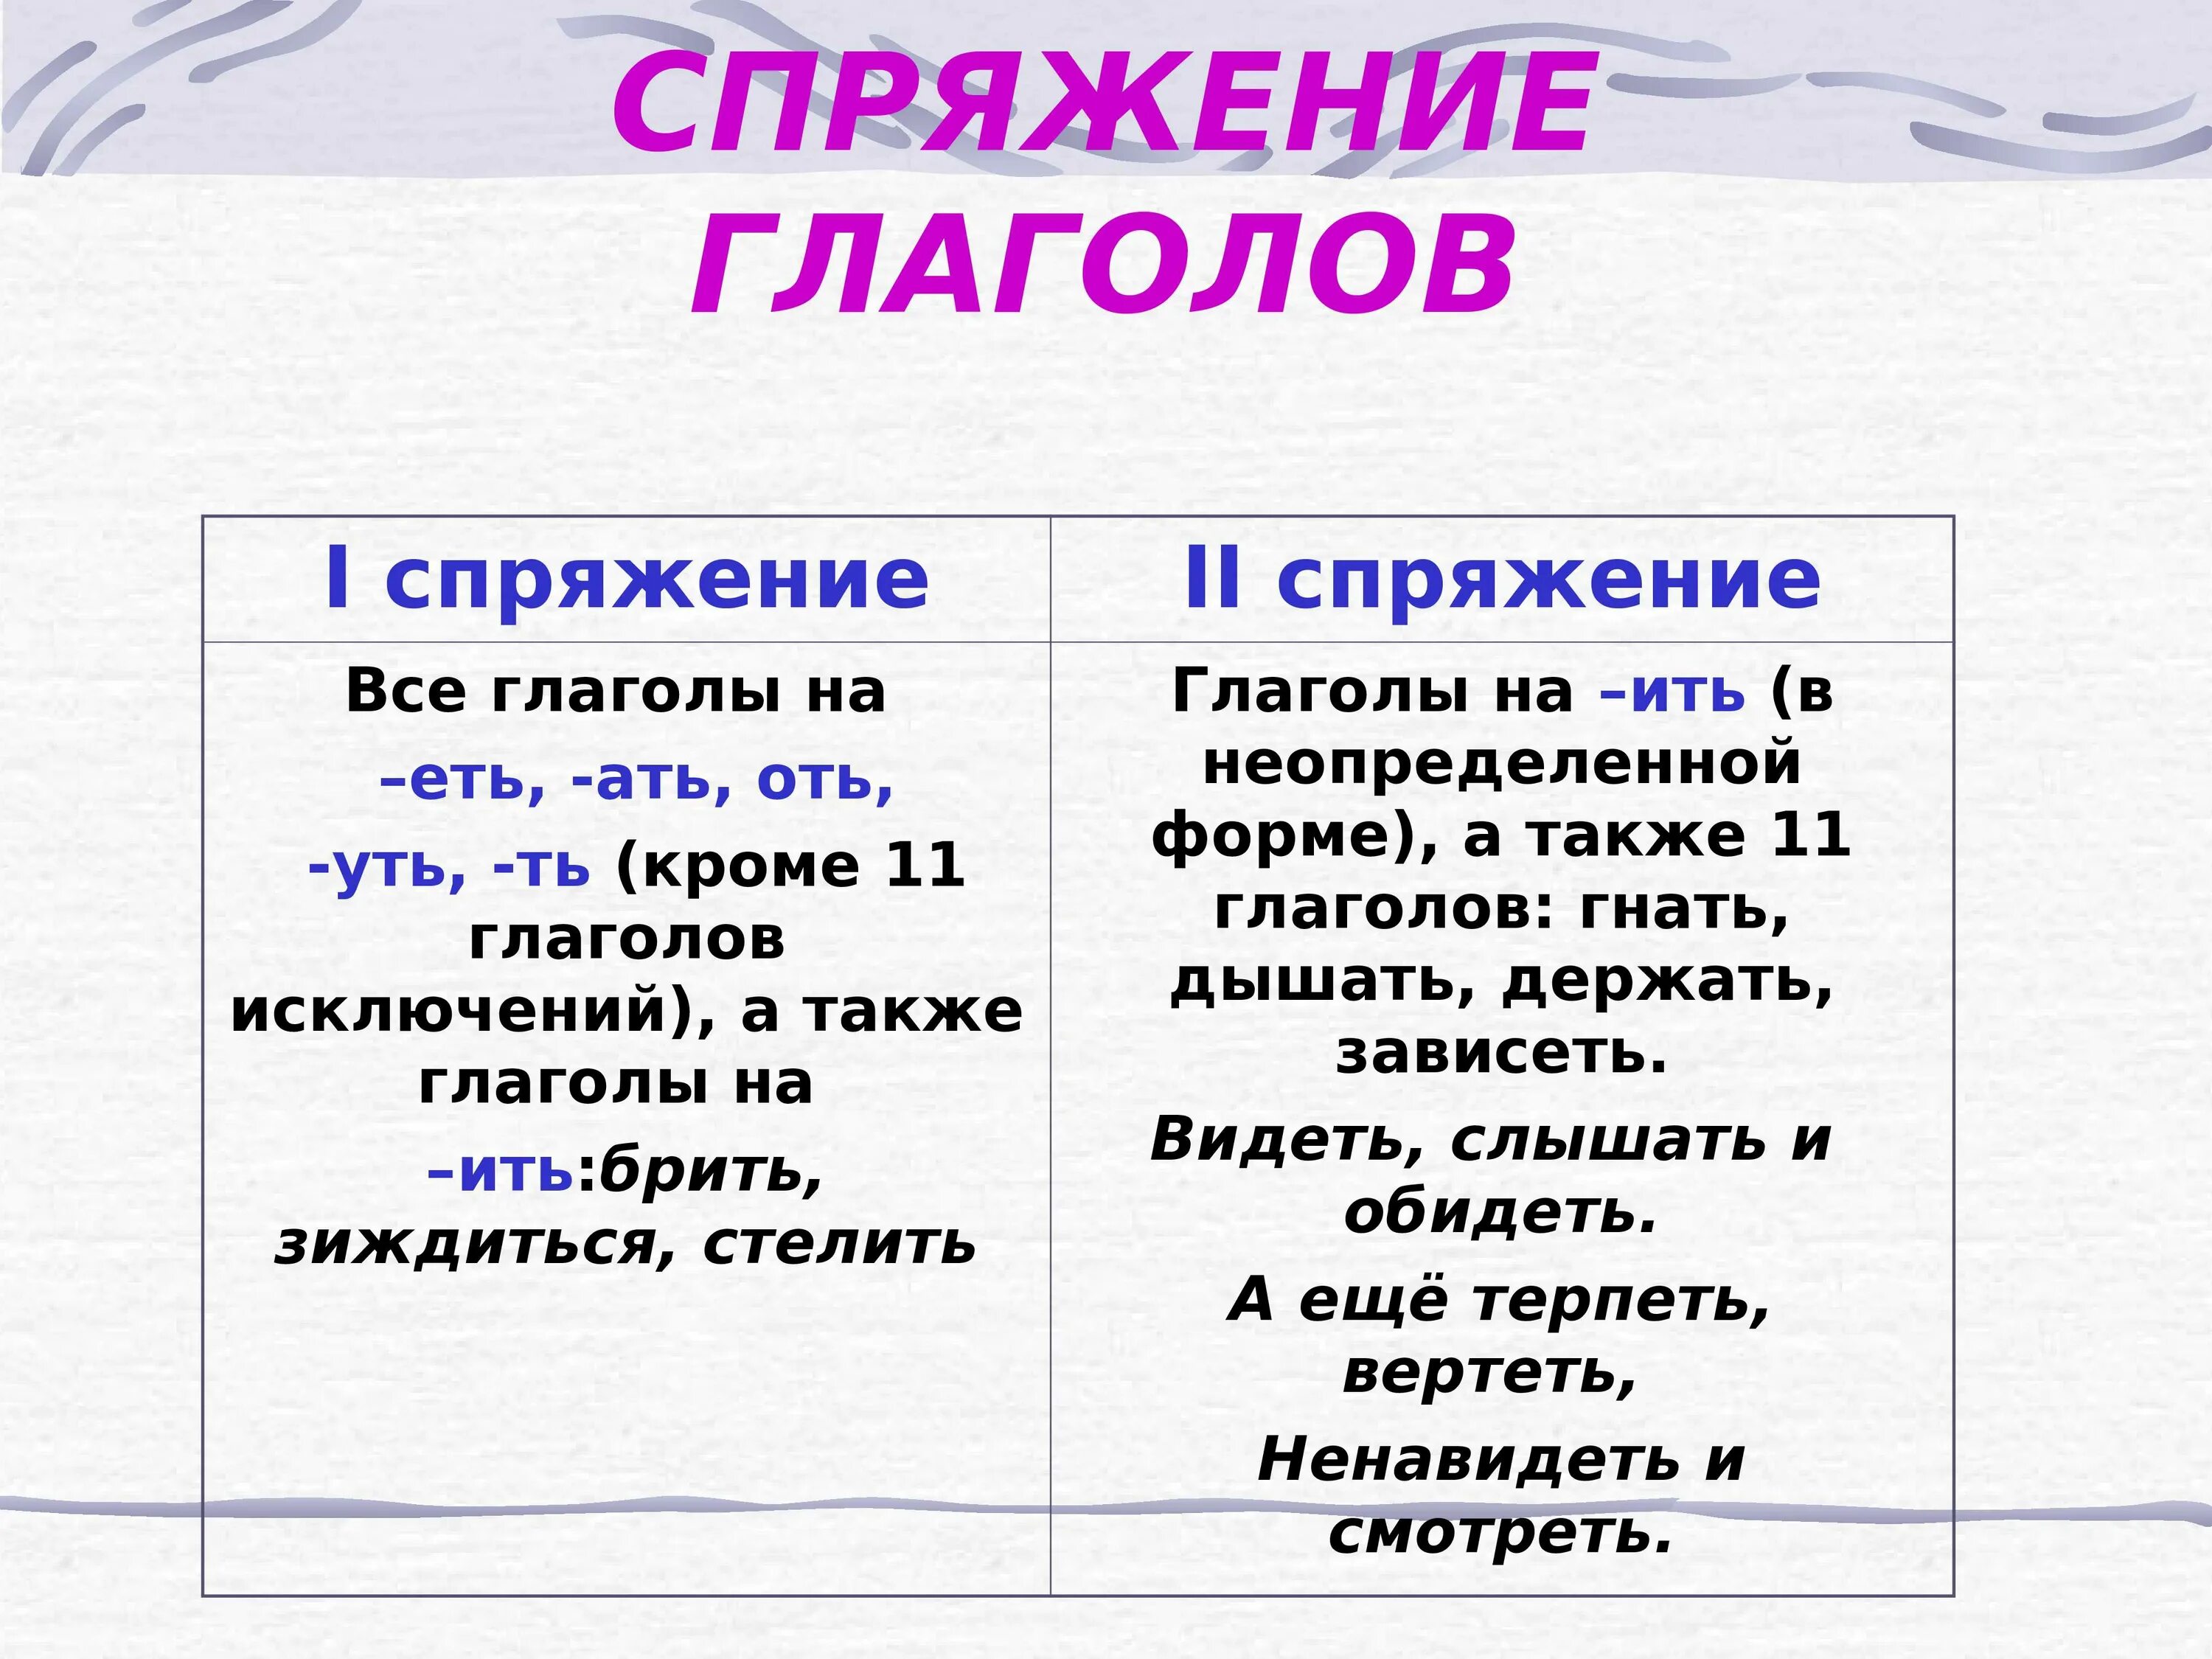 Светящейся спряжение. Как понять спряжение глаголов в русском языке 4 класс таблица. Как понять спряжение глаголов 6 класс. Спряжение глаголов правило таблица. Как понять спряжение глаголов в русском языке 4 класс.